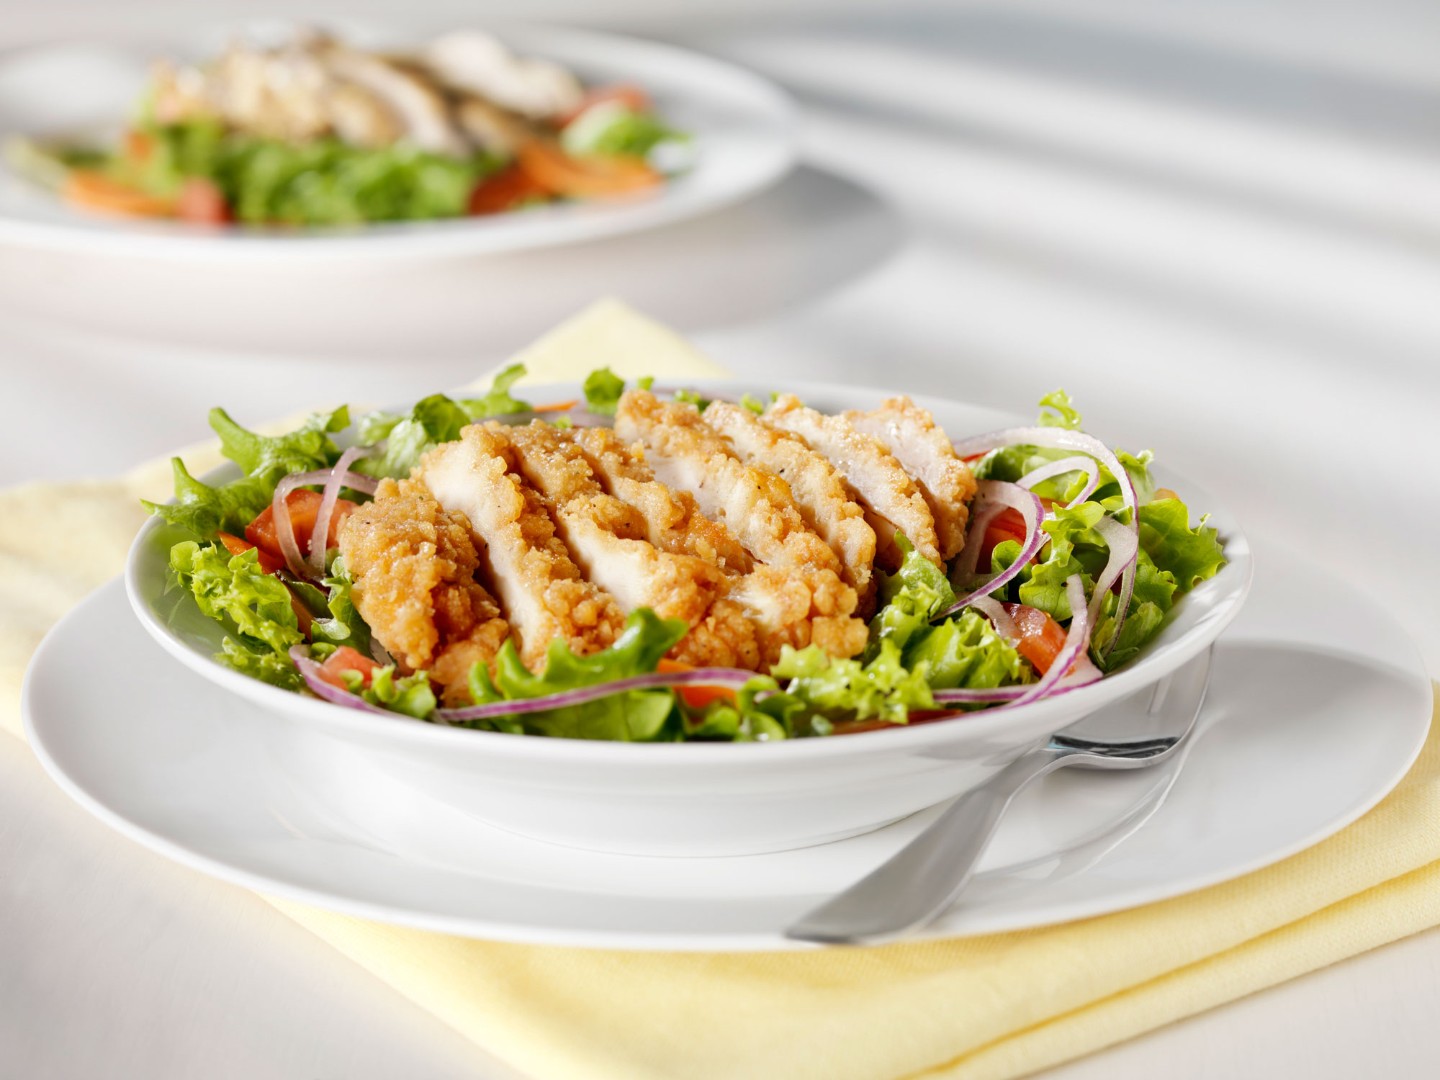 crunch-chicken-salad||Spicy Chicken Salad Sandwich